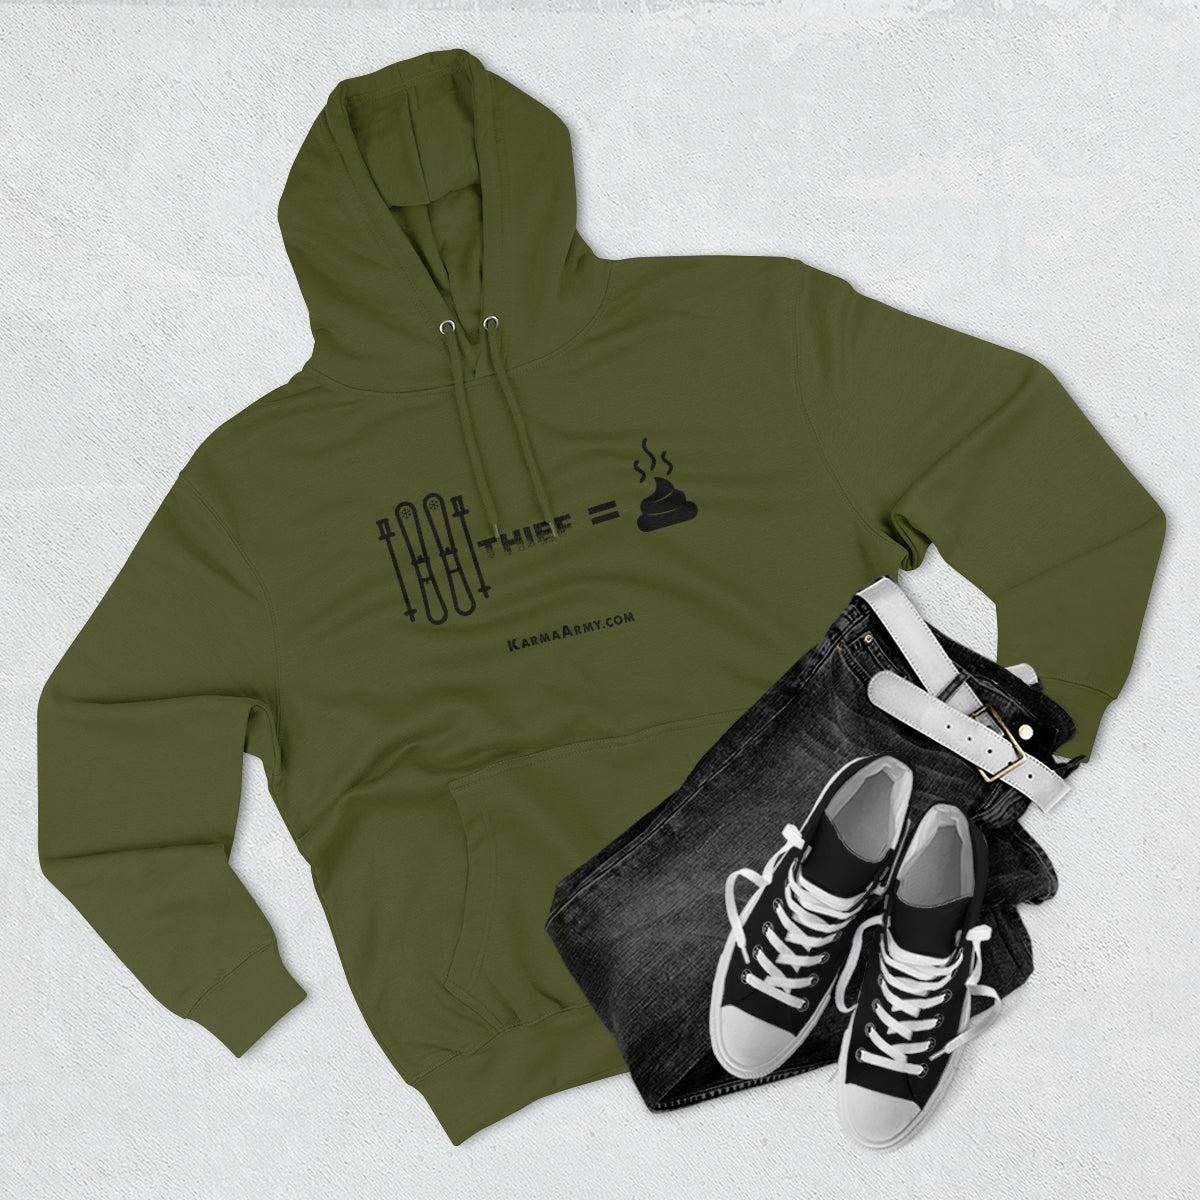 Ski Thief = Poop Unisex Premium Pullover Hoodie